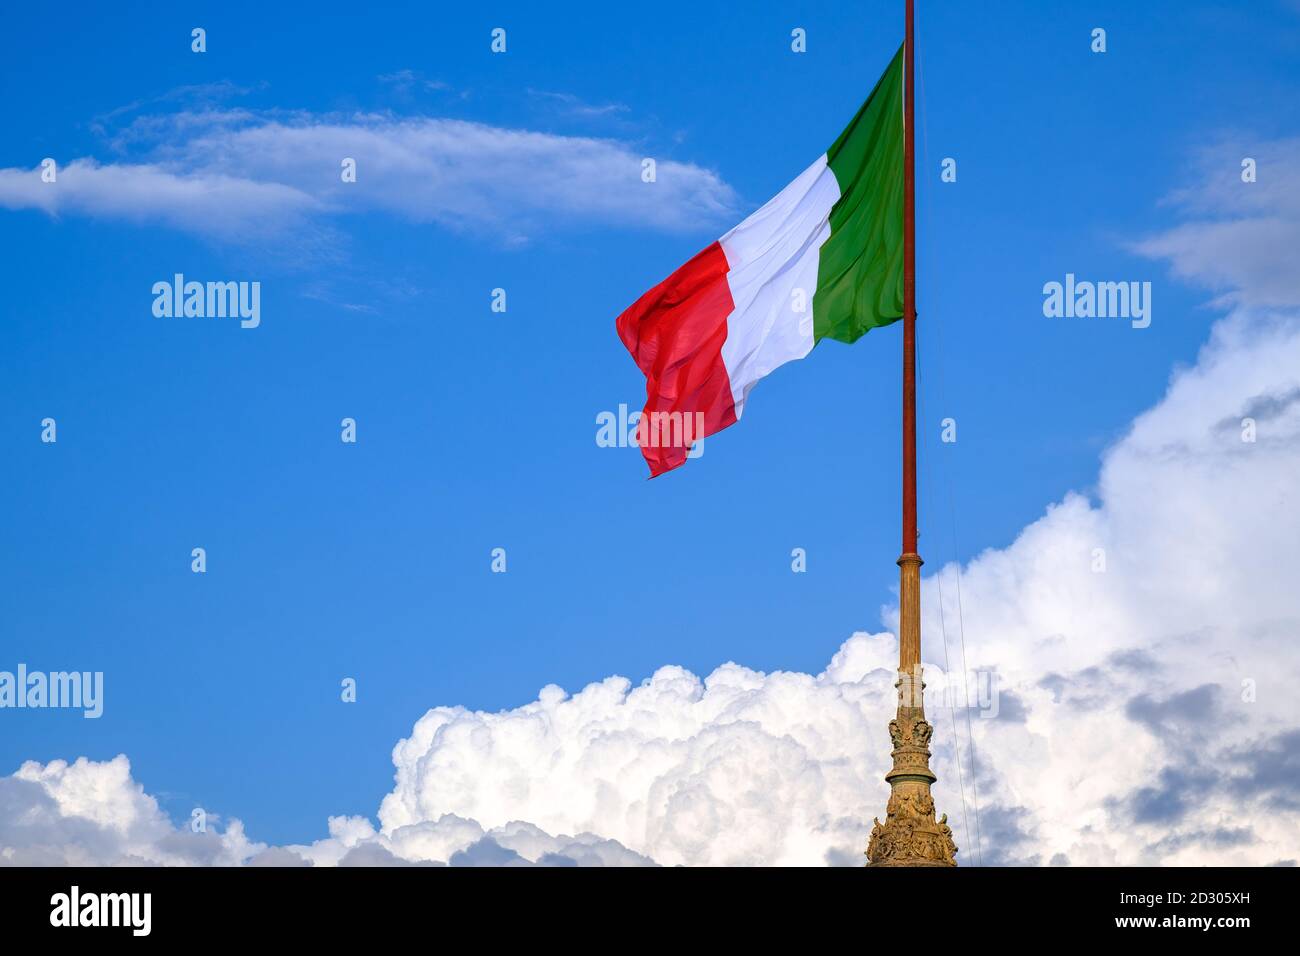 Le drapeau de l'Italie se dresse fièrement avec un ciel bleu sur le fond encadré par des nuages. Image symbolique de la Journée nationale italienne et de la Fête de la République le 2 juin Banque D'Images